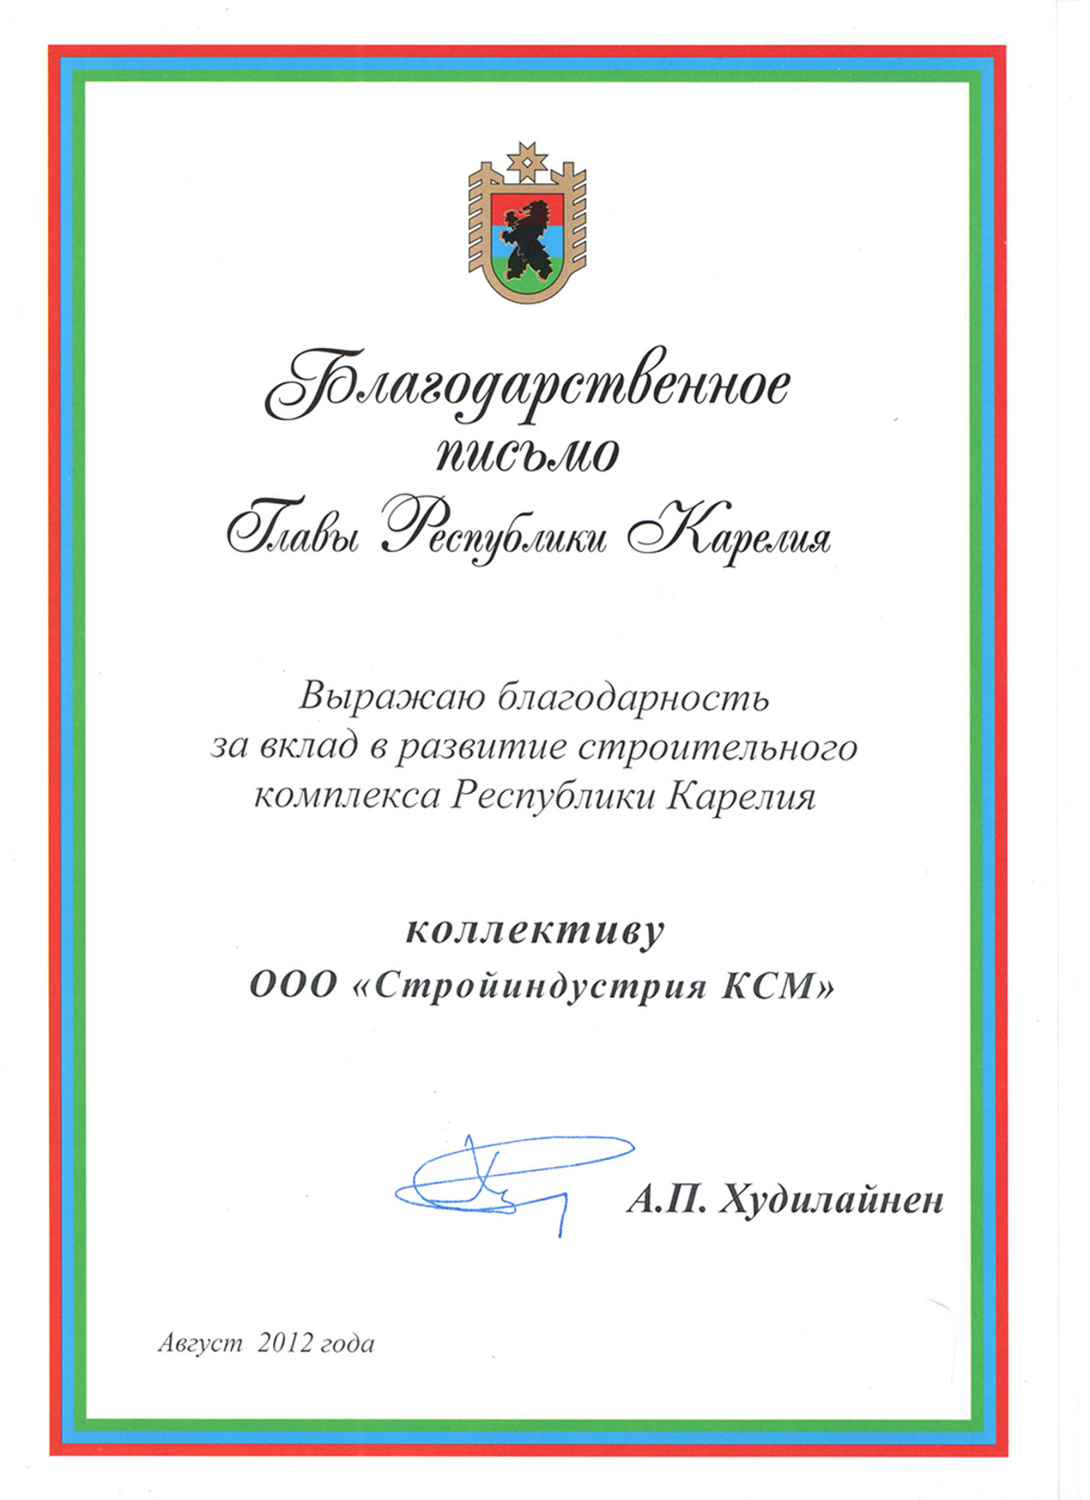 Благодарственное письмо от Главы Республики Карелия